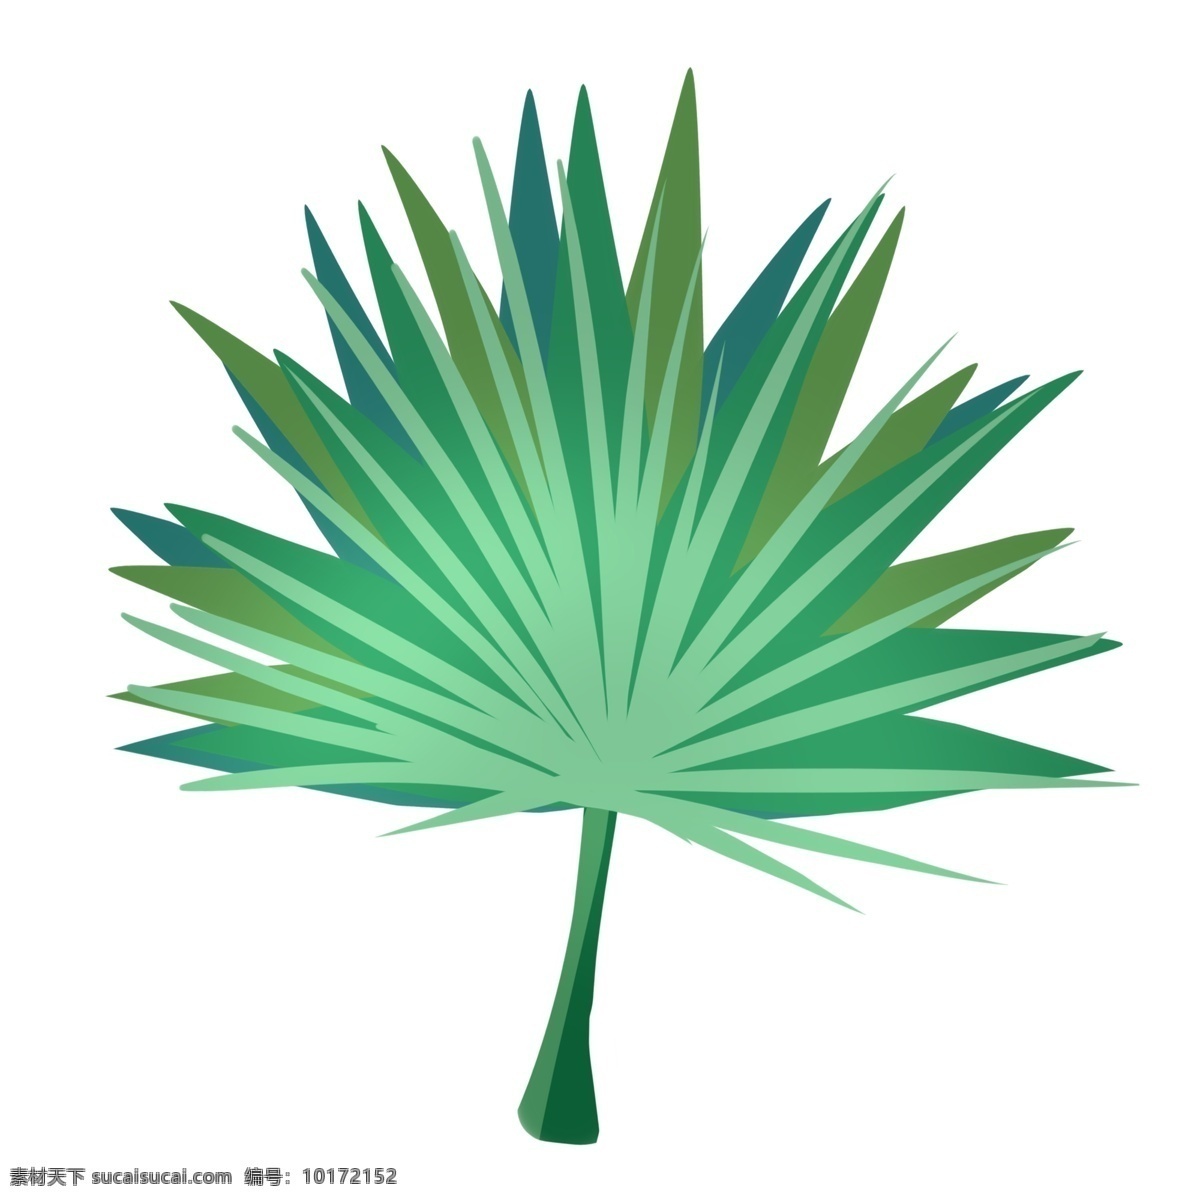 扇形叶子装饰 绿色 热带 植物